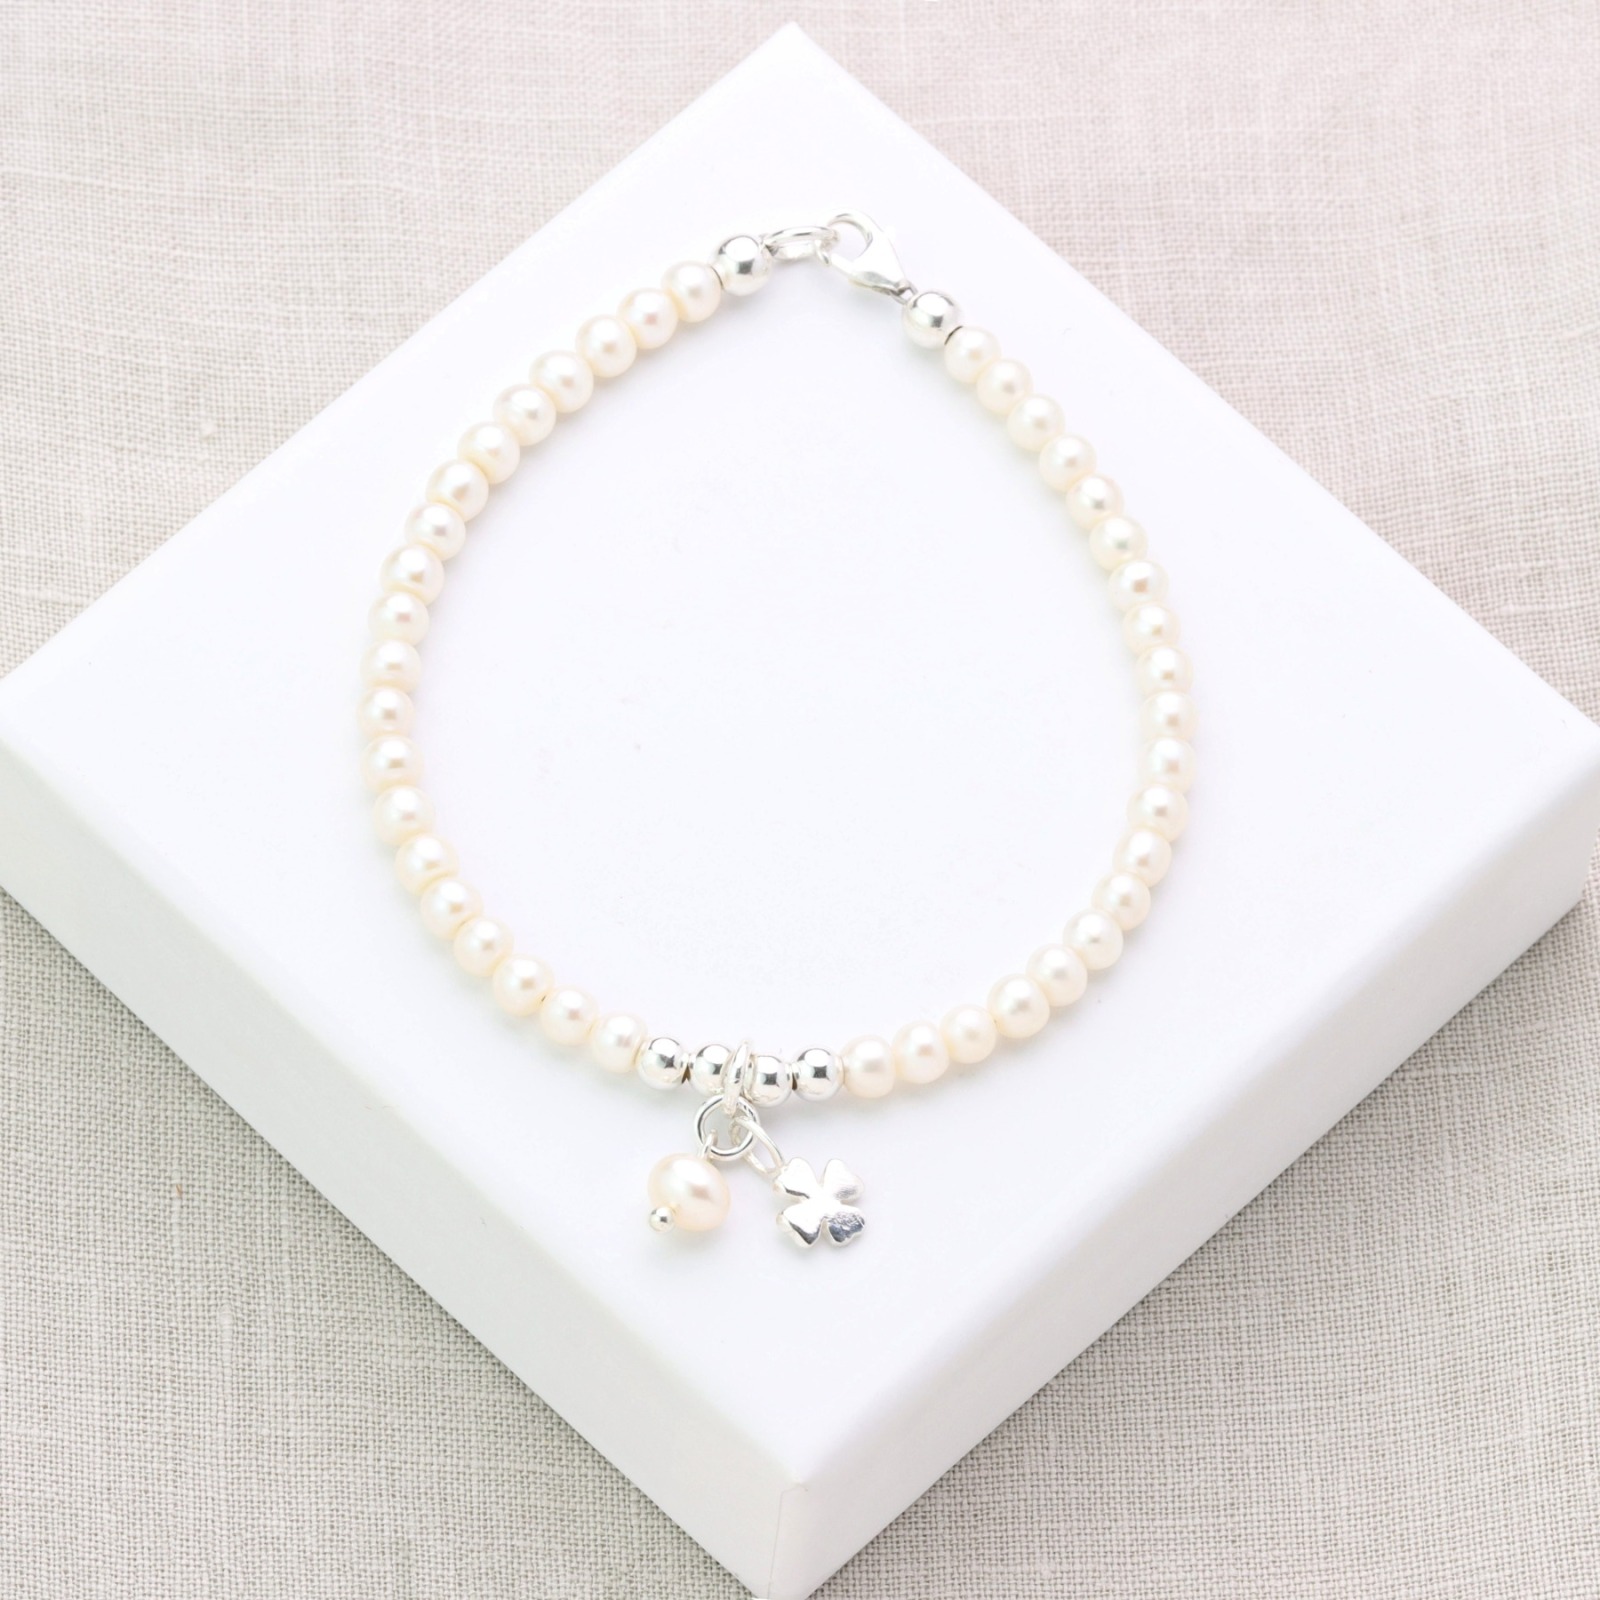 Glücks-Armband aus echten Perlen mit Kleeblatt Silber Glücksbringer-Geschenk für Frauen und Mädchen